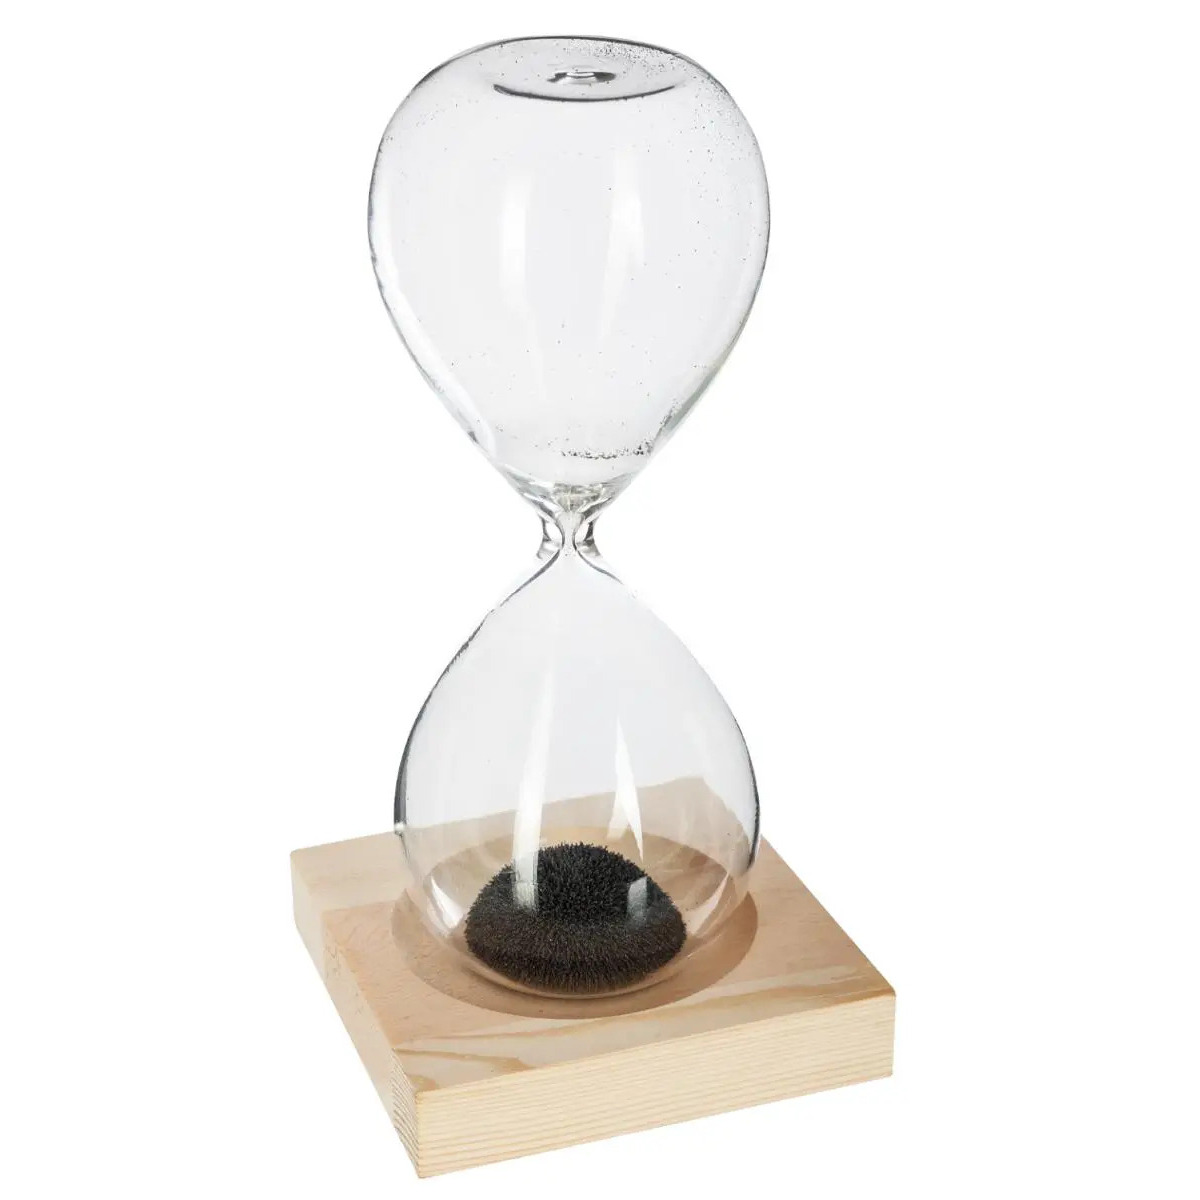 Atmosphera Zandloper cilinder decoratie of tijdsmeting 1 minuten zwart zand H15 cm glas-hout